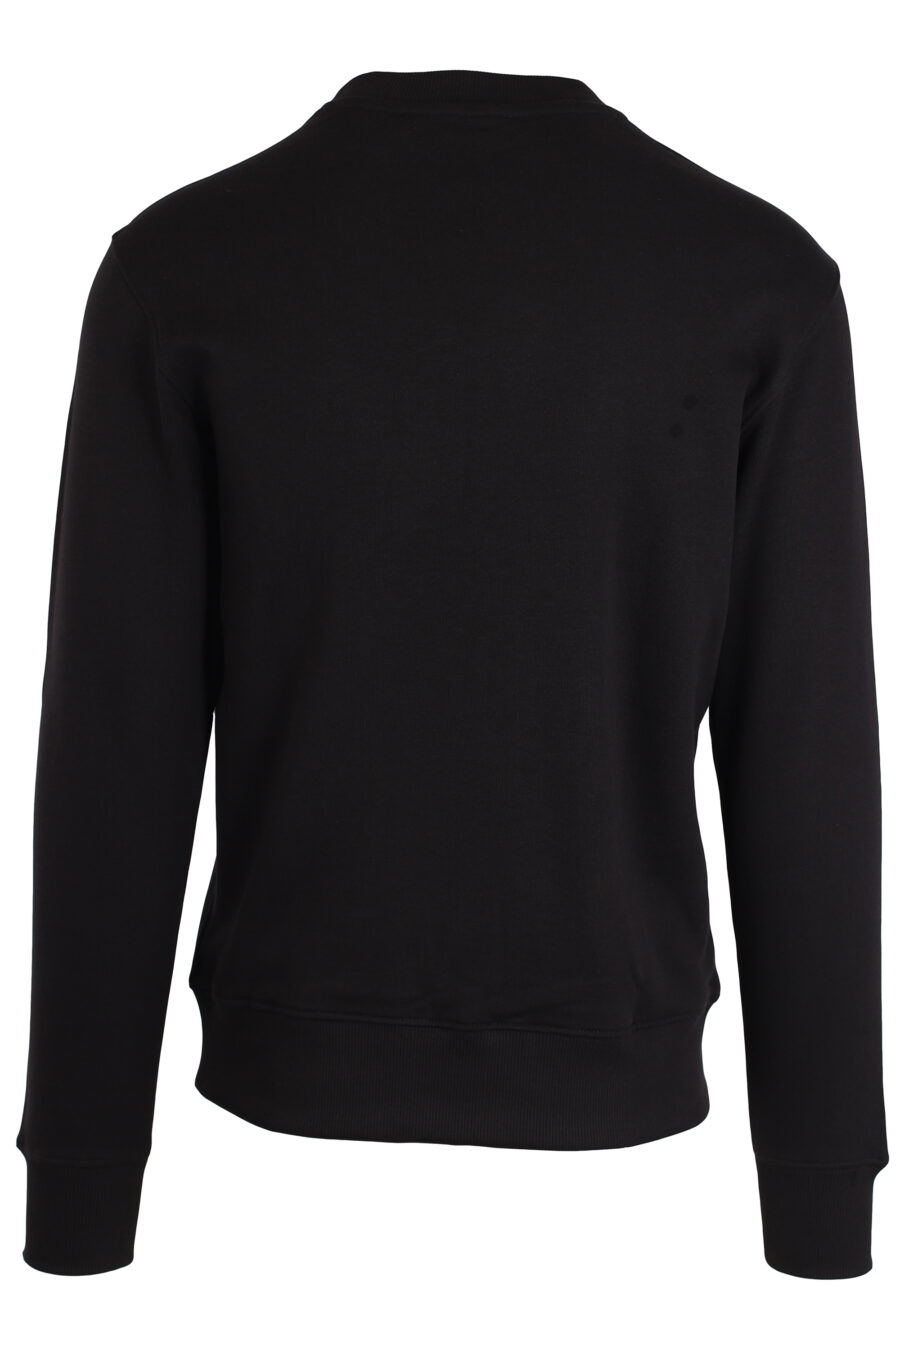 Camisola preta com um pequeno logótipo redondo prateado - IMG 3983